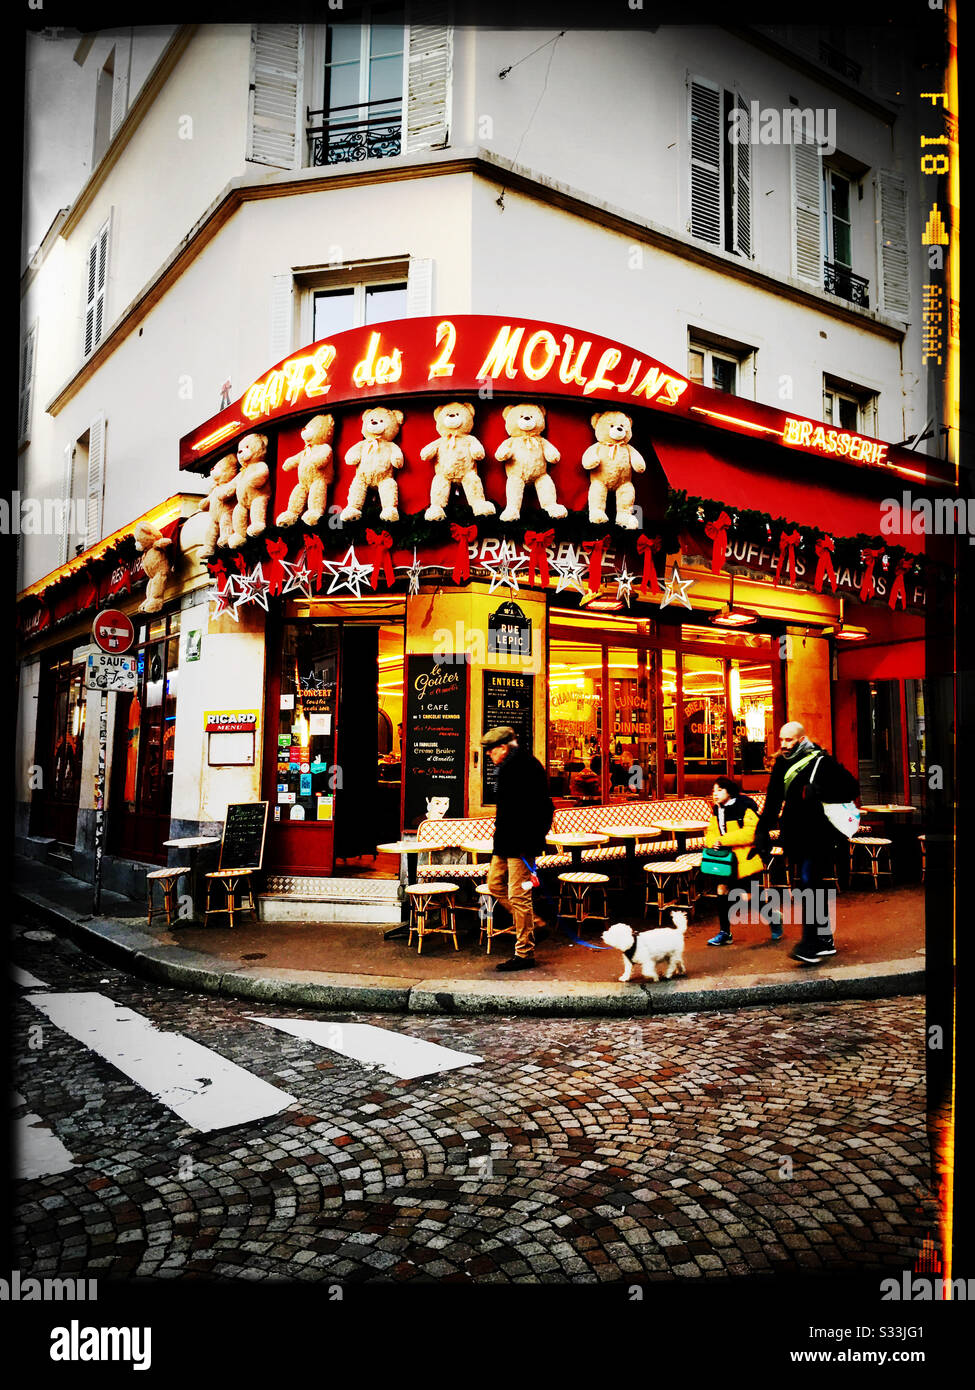 Café Des 2 Moulins - Montmartre - Paris Banque D'Images